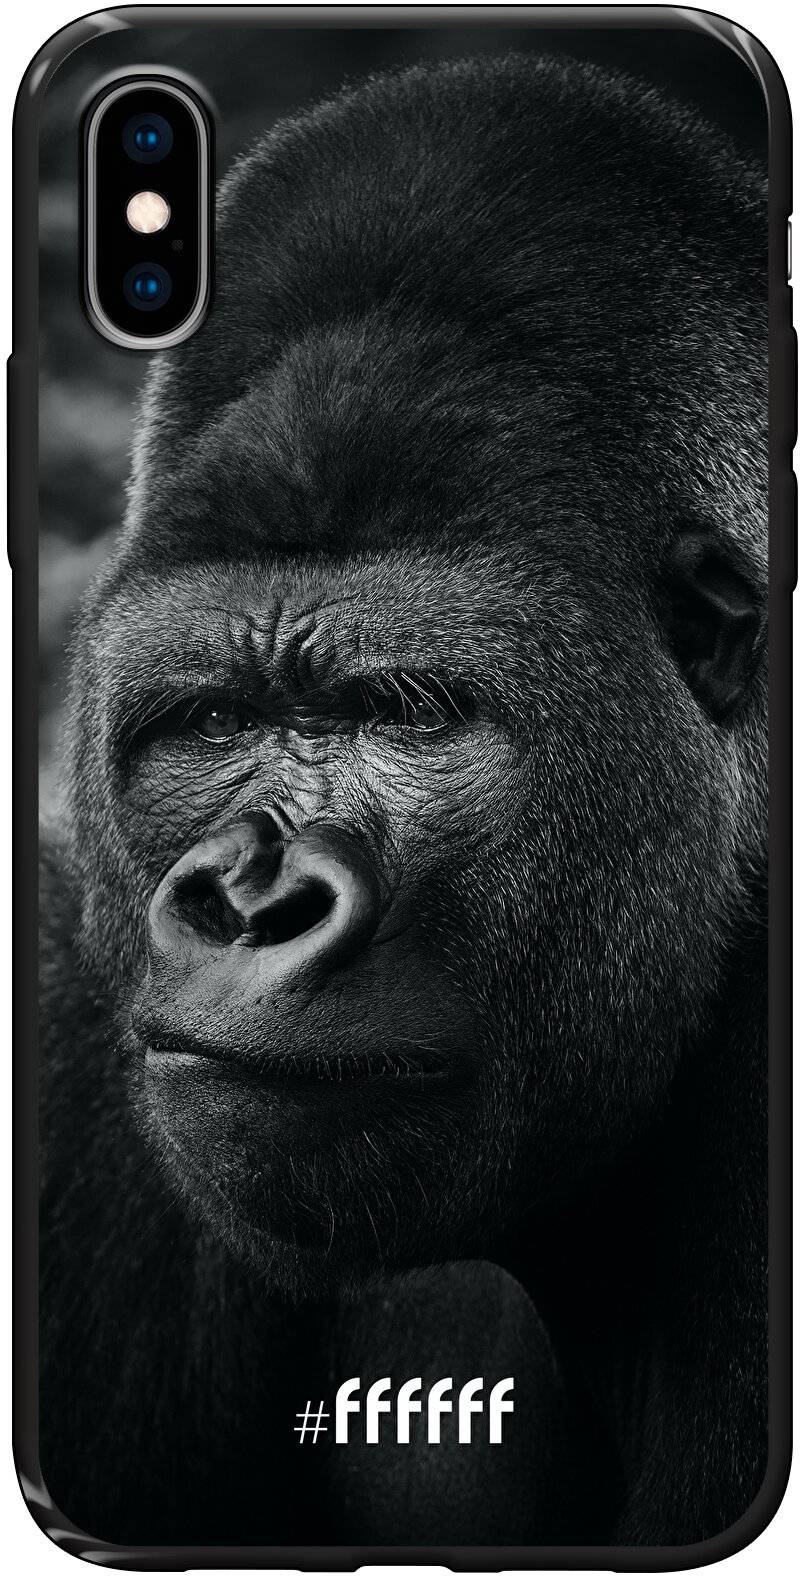 Gorilla iPhone Xs